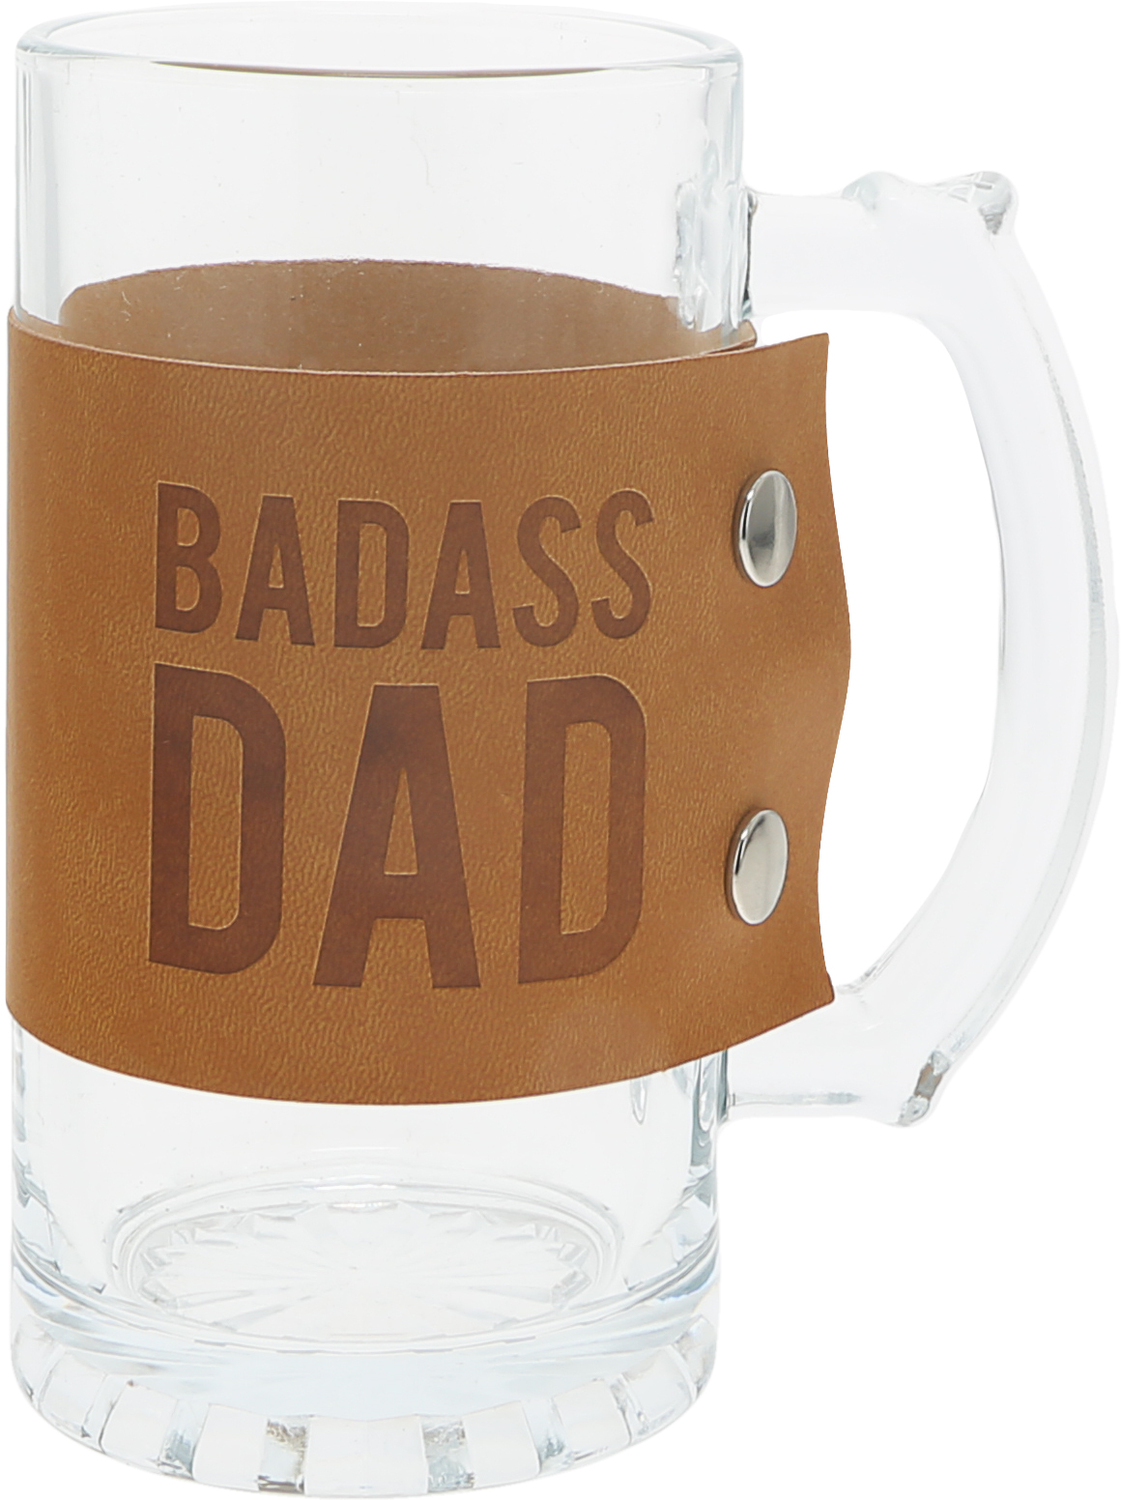 Badass by Man Made - Badass - 16 oz. Glass Stein with PU Leather Wrap